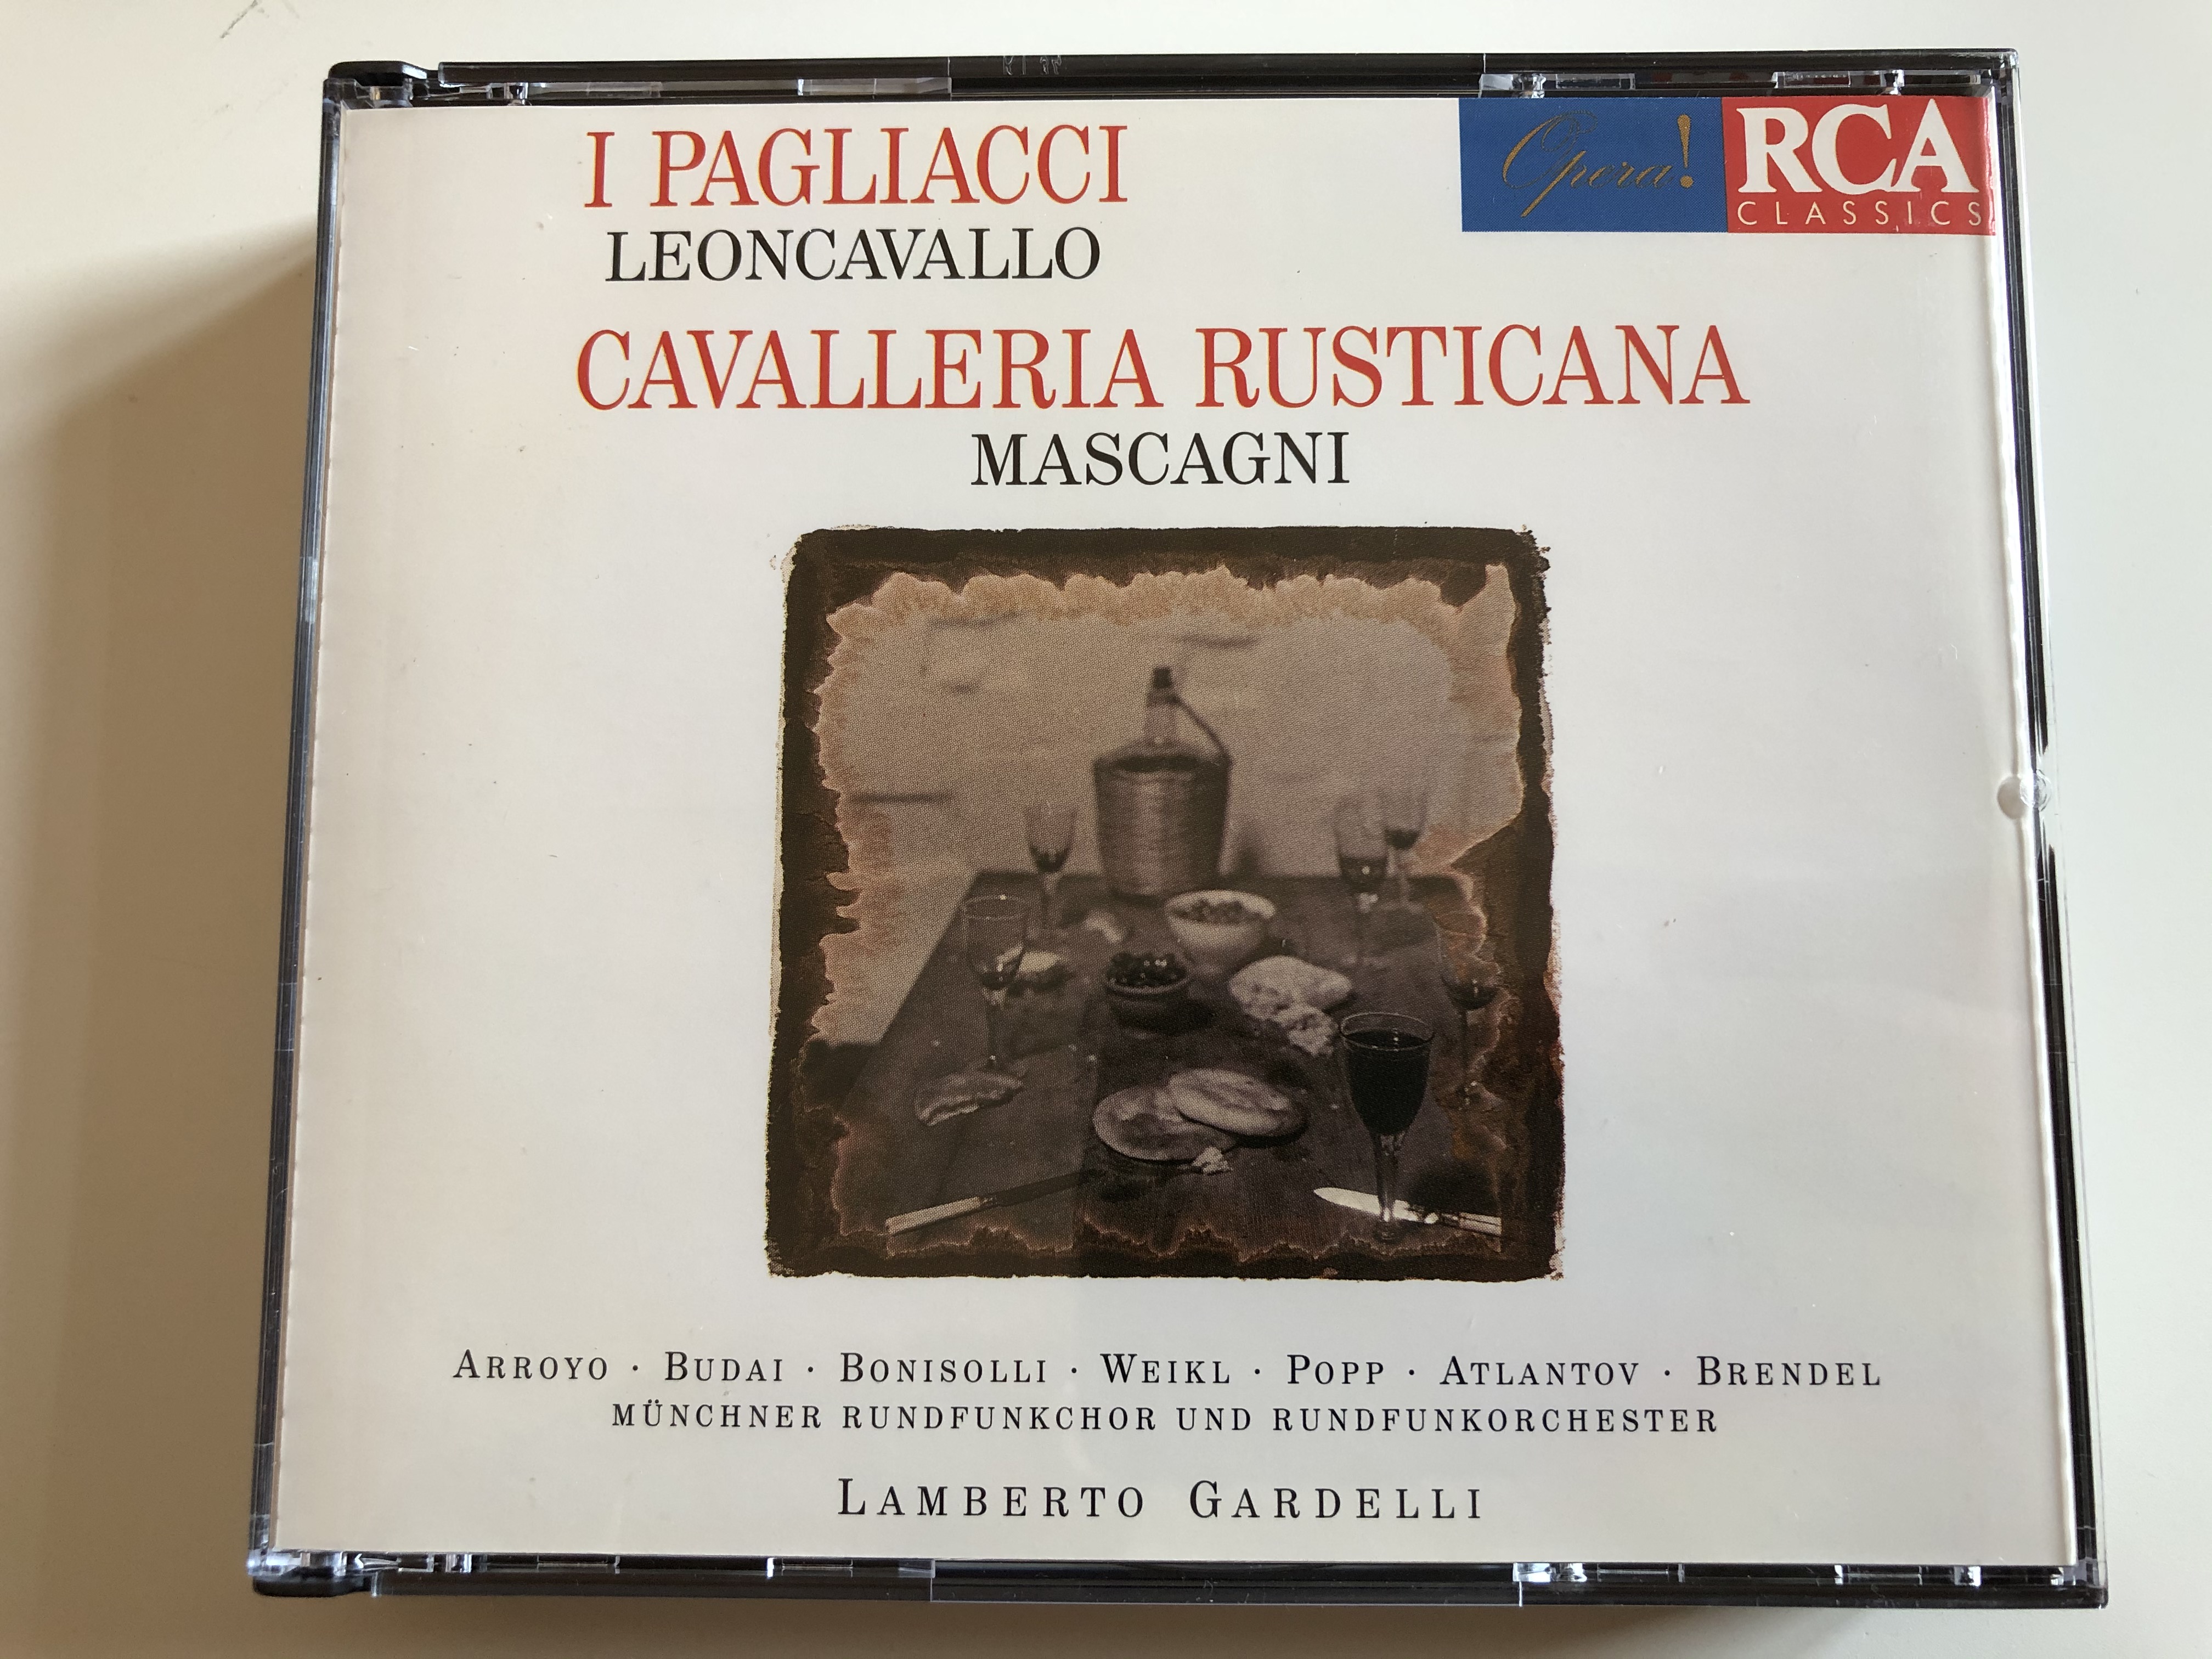 i-pagliacci-leoncavallo-cavalleria-rusticana-mascagni-arroyo-budai-bonisolli-weikl-popp-atlantov-brendel-m-nchner-rundfunkschor-rundfunkorchester-lamberto-gardelli-rca-classics-2x-1-.jpg